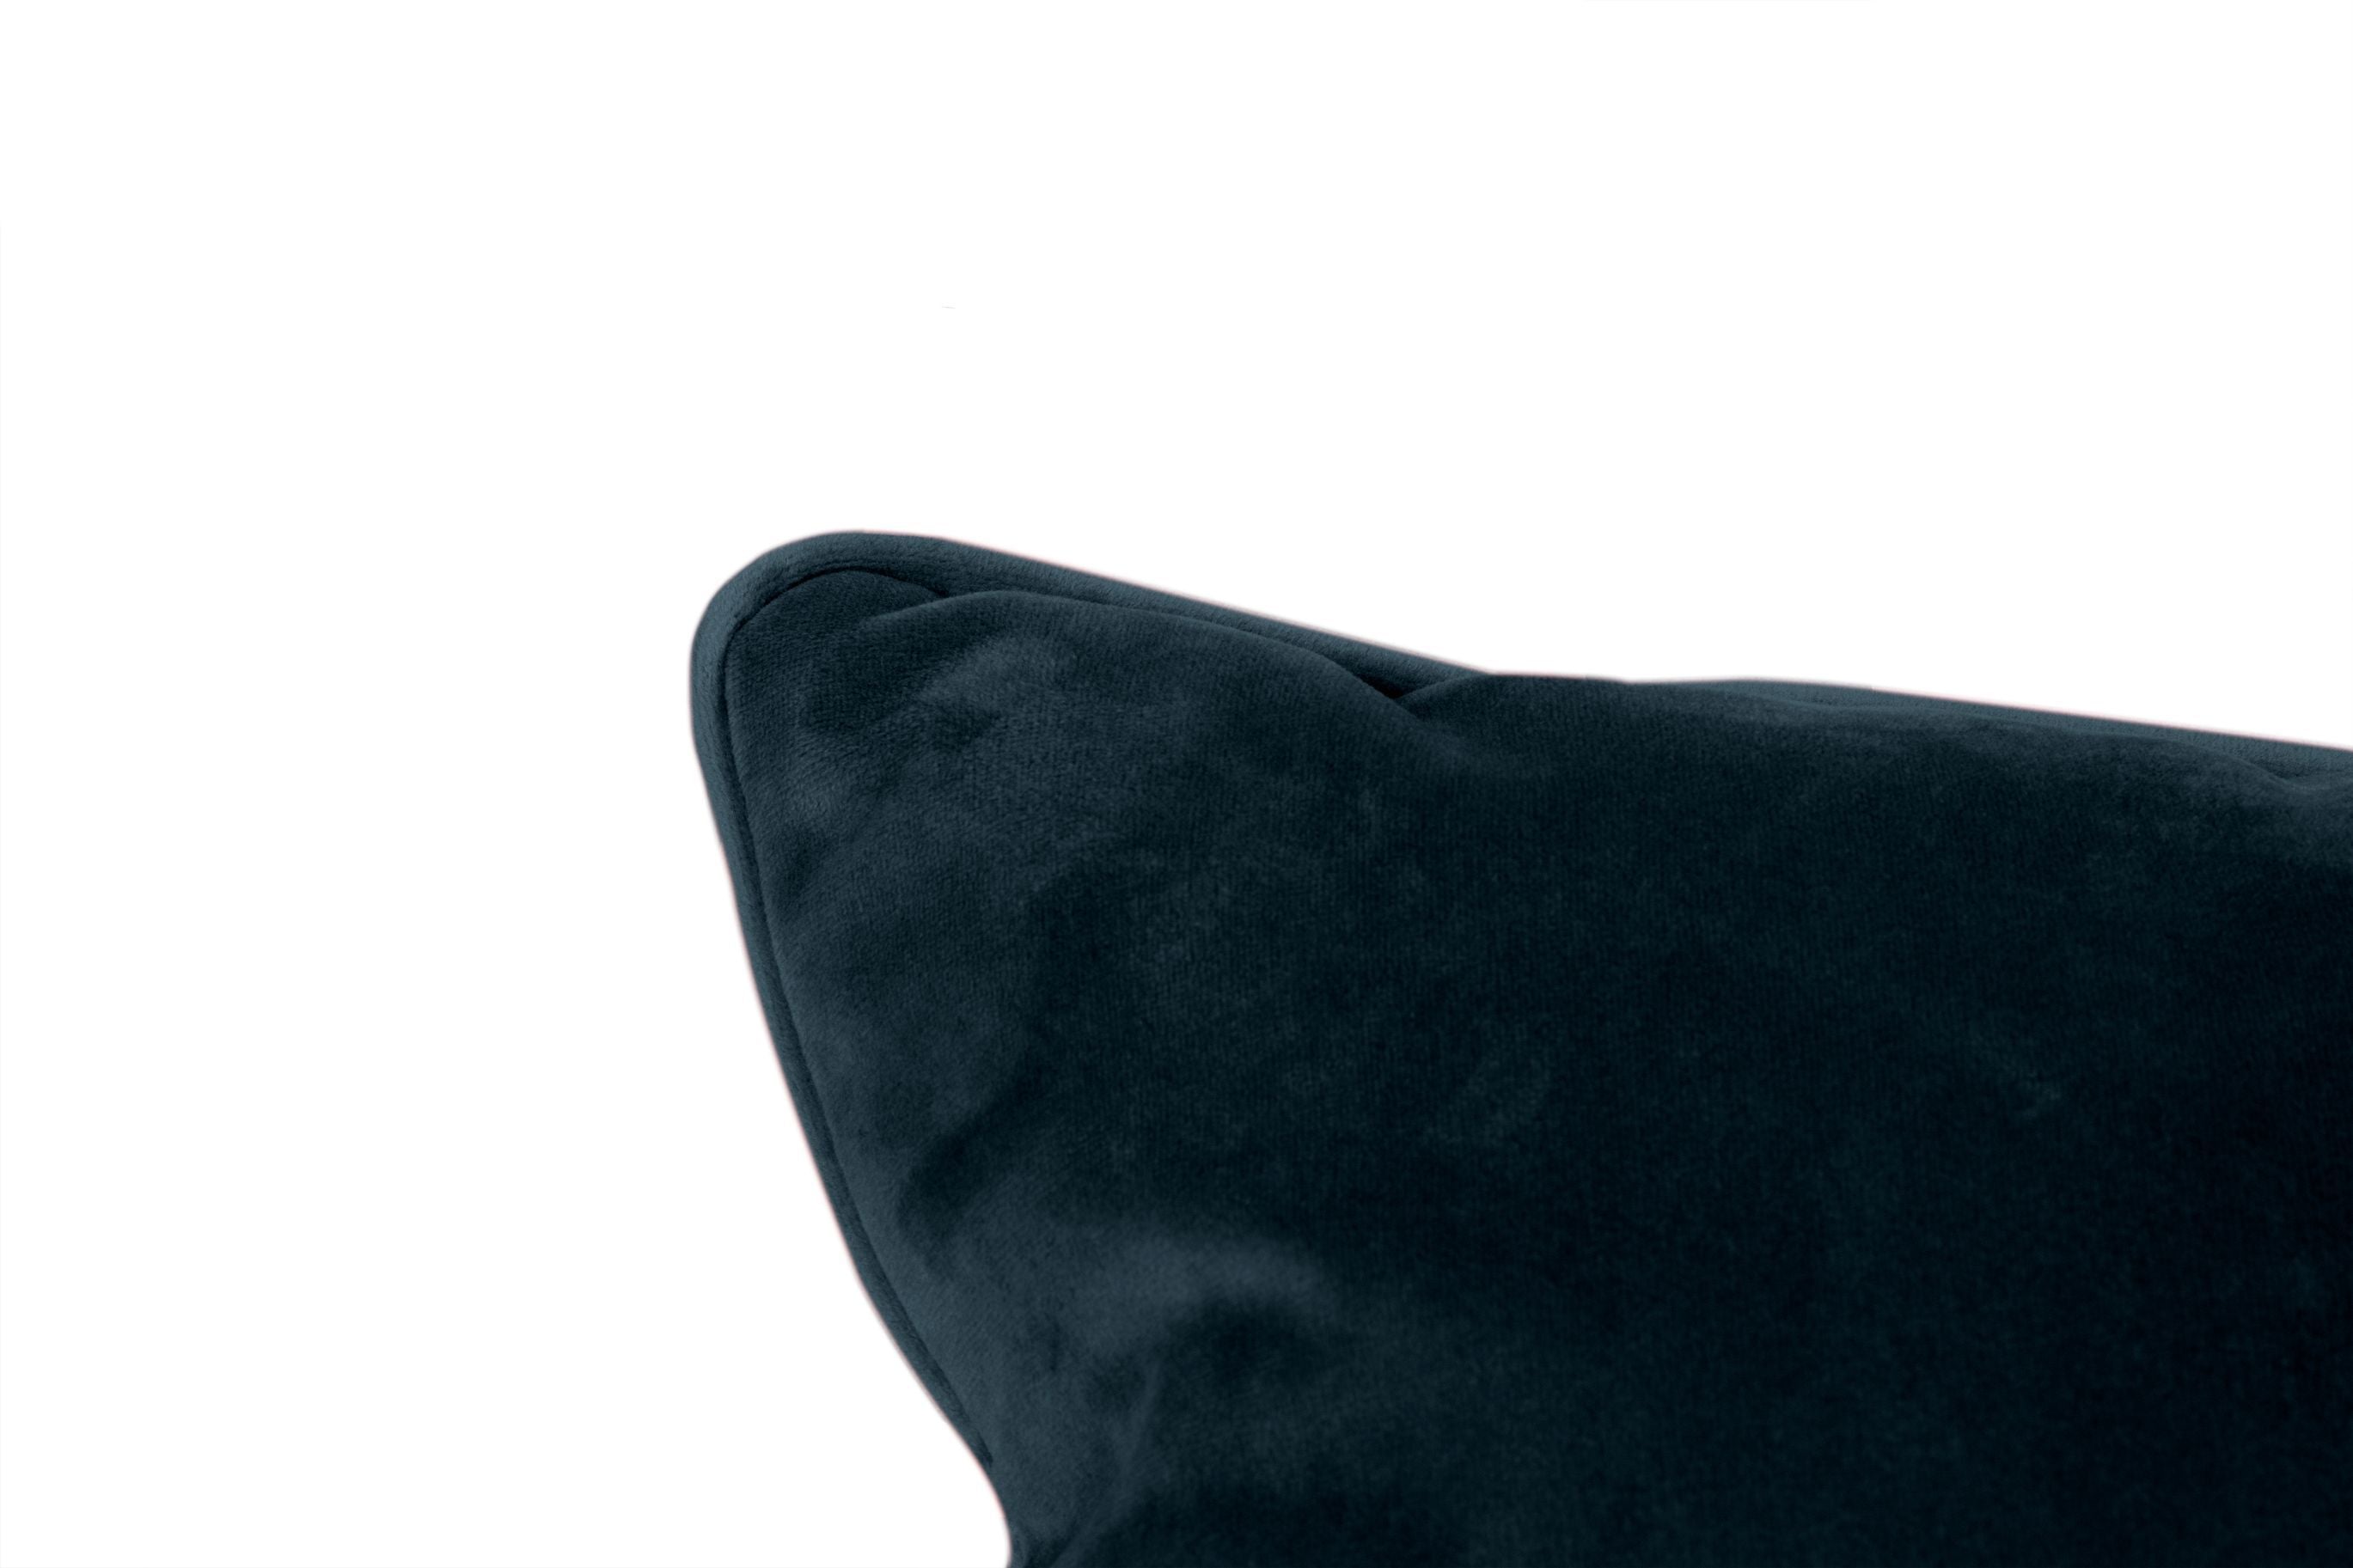 Fatboy King Velvet Cushion reciclado 66x40 cm, azul oscuro